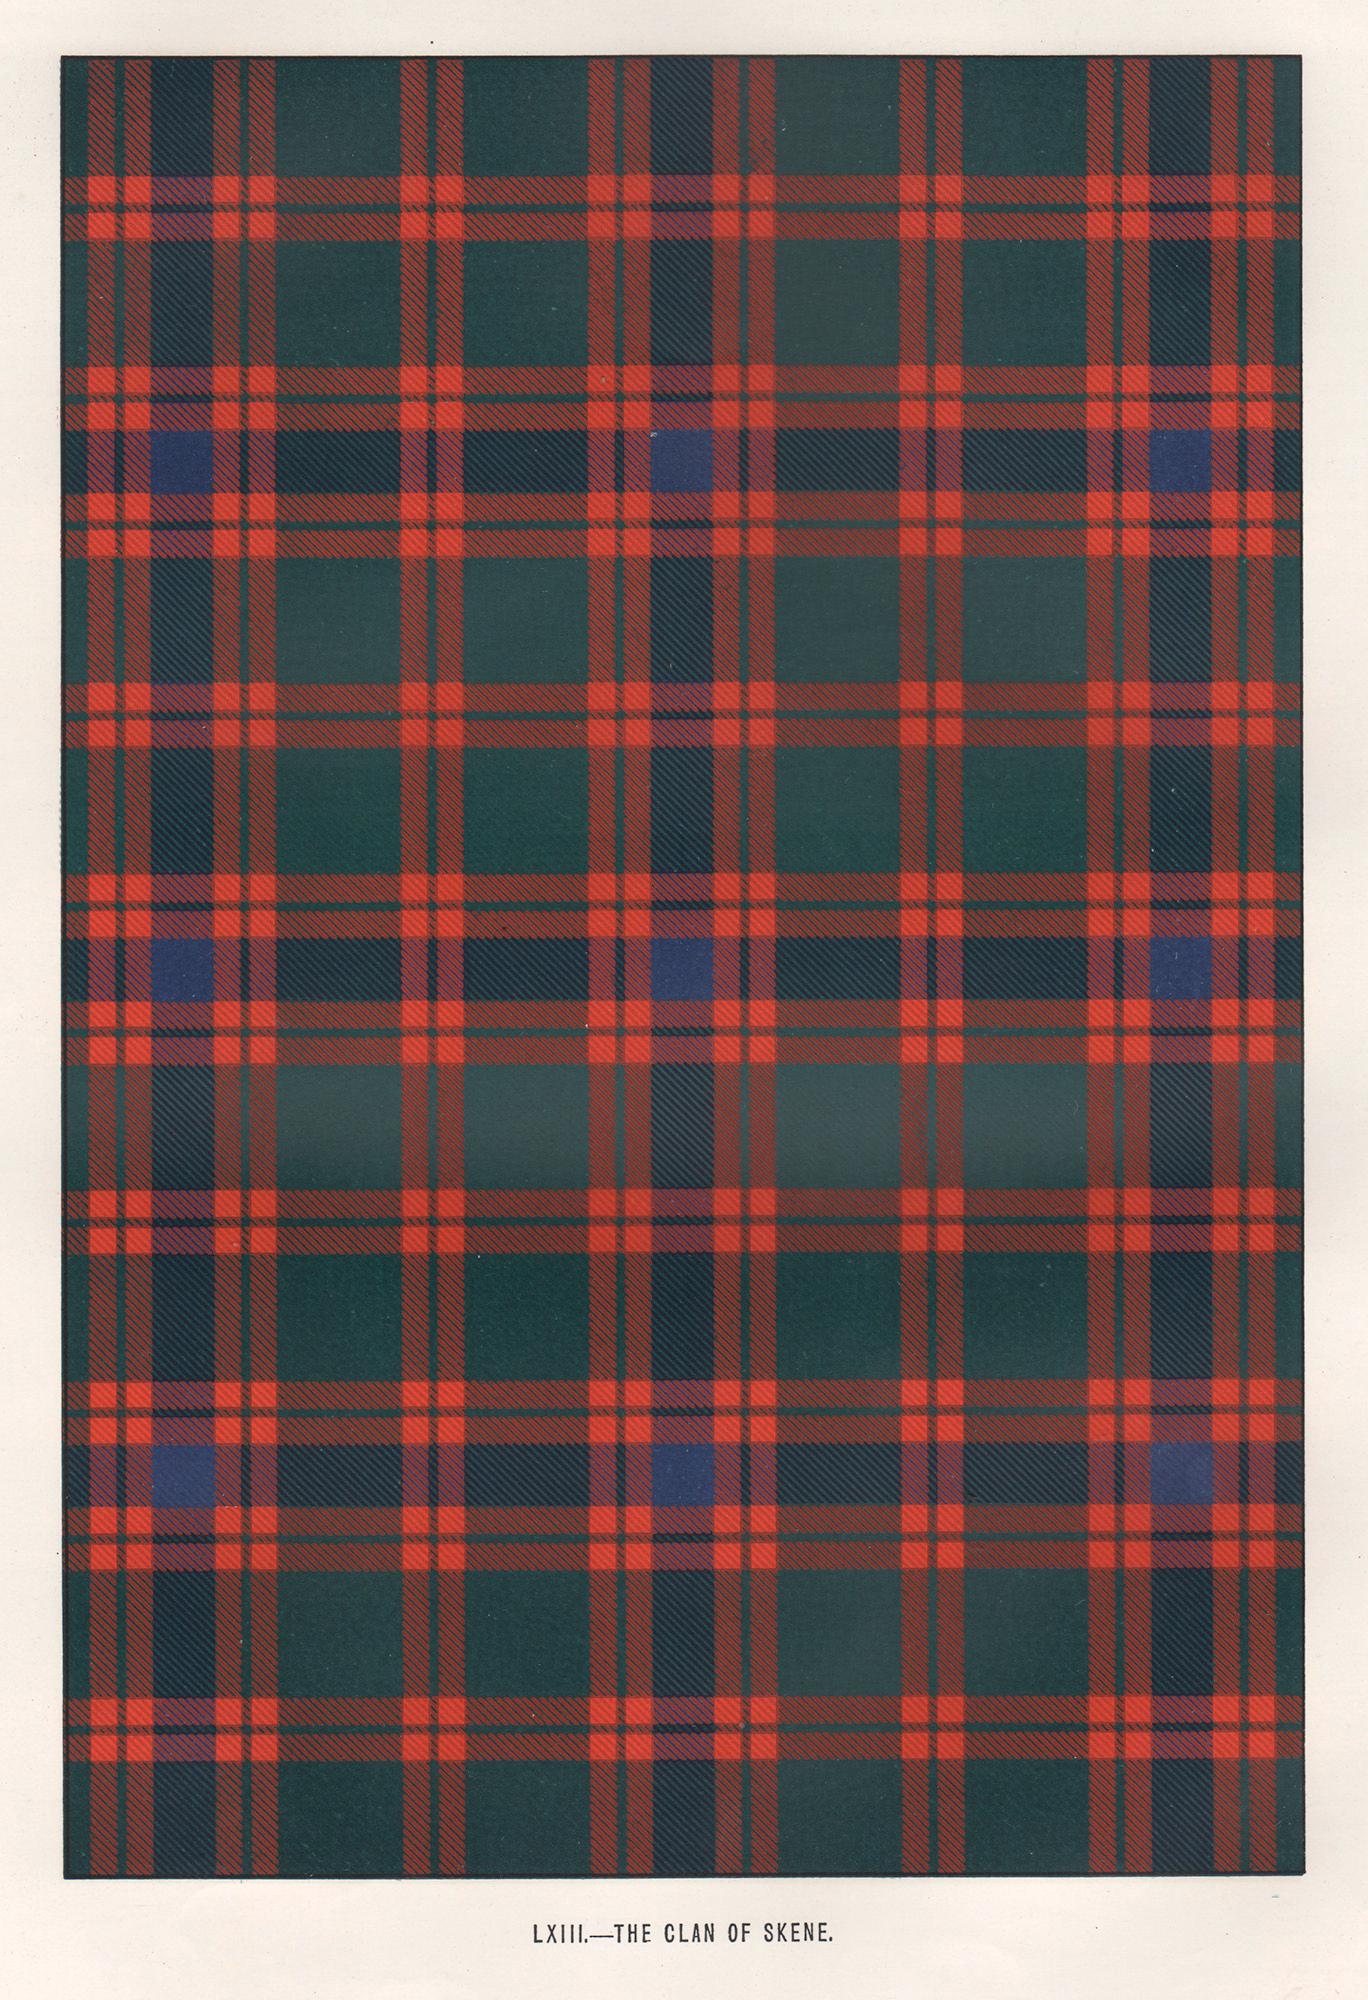 Abstract Print Unknown - Lithographie du clan de Skene (tartan), Écosse écossaise de conception artistique